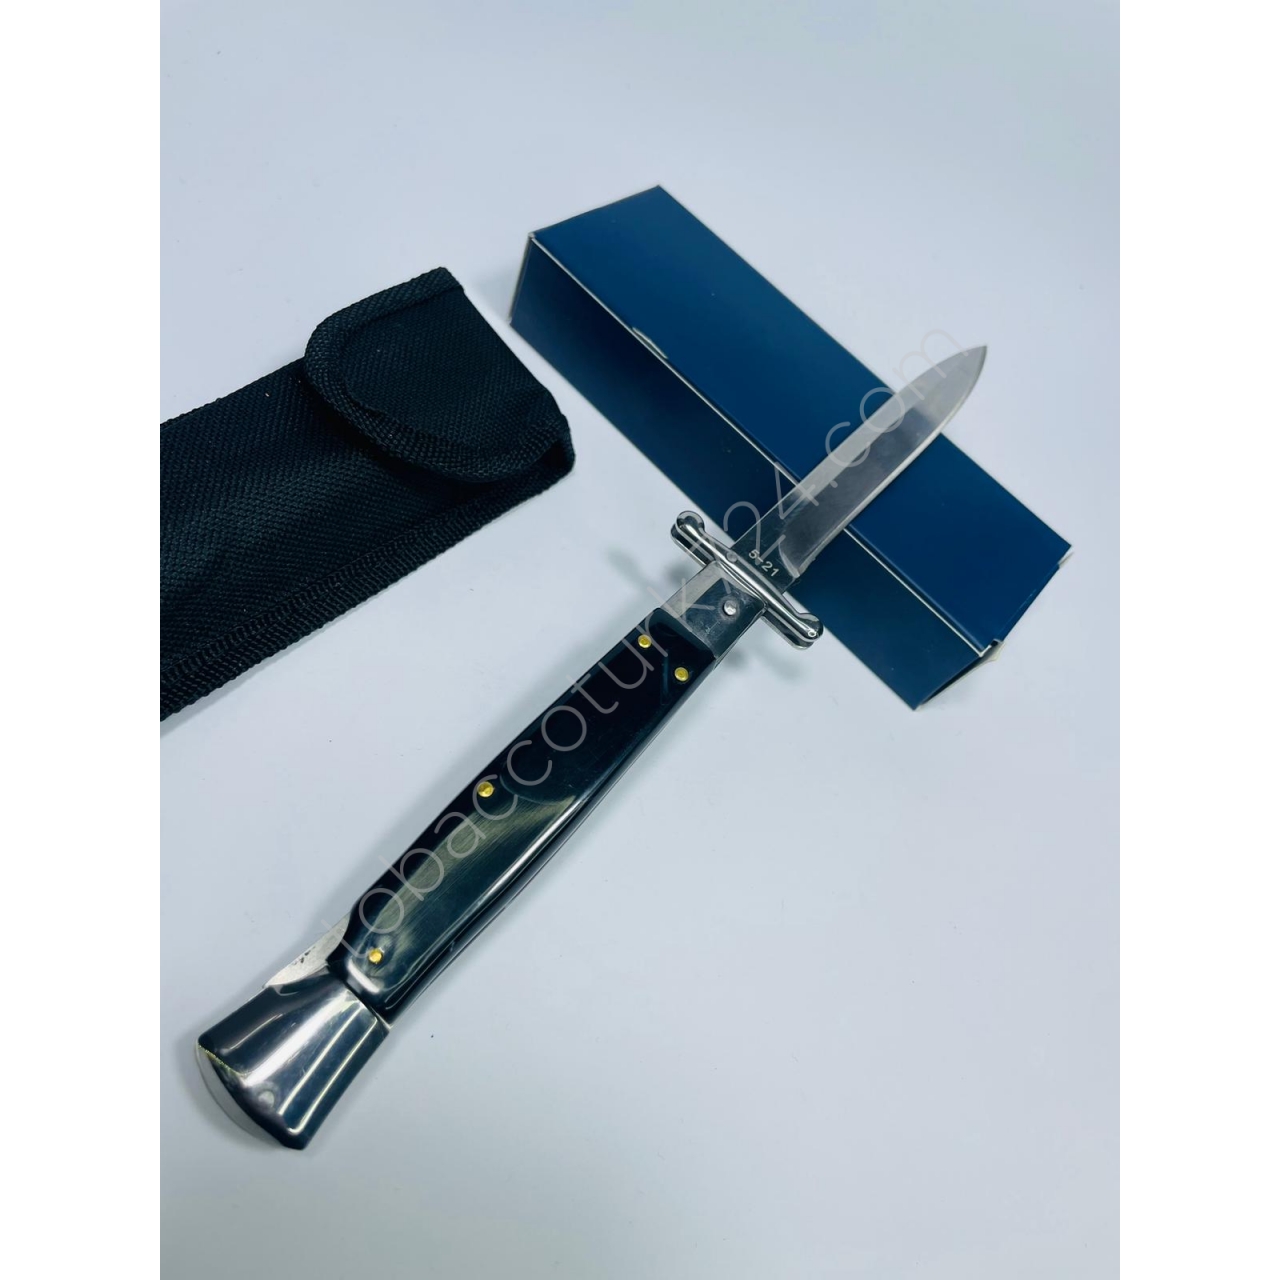 Akc Marka İtalyan SiyahKemik Kasa MetalRenk Bıçak //25cm-Yeniseri